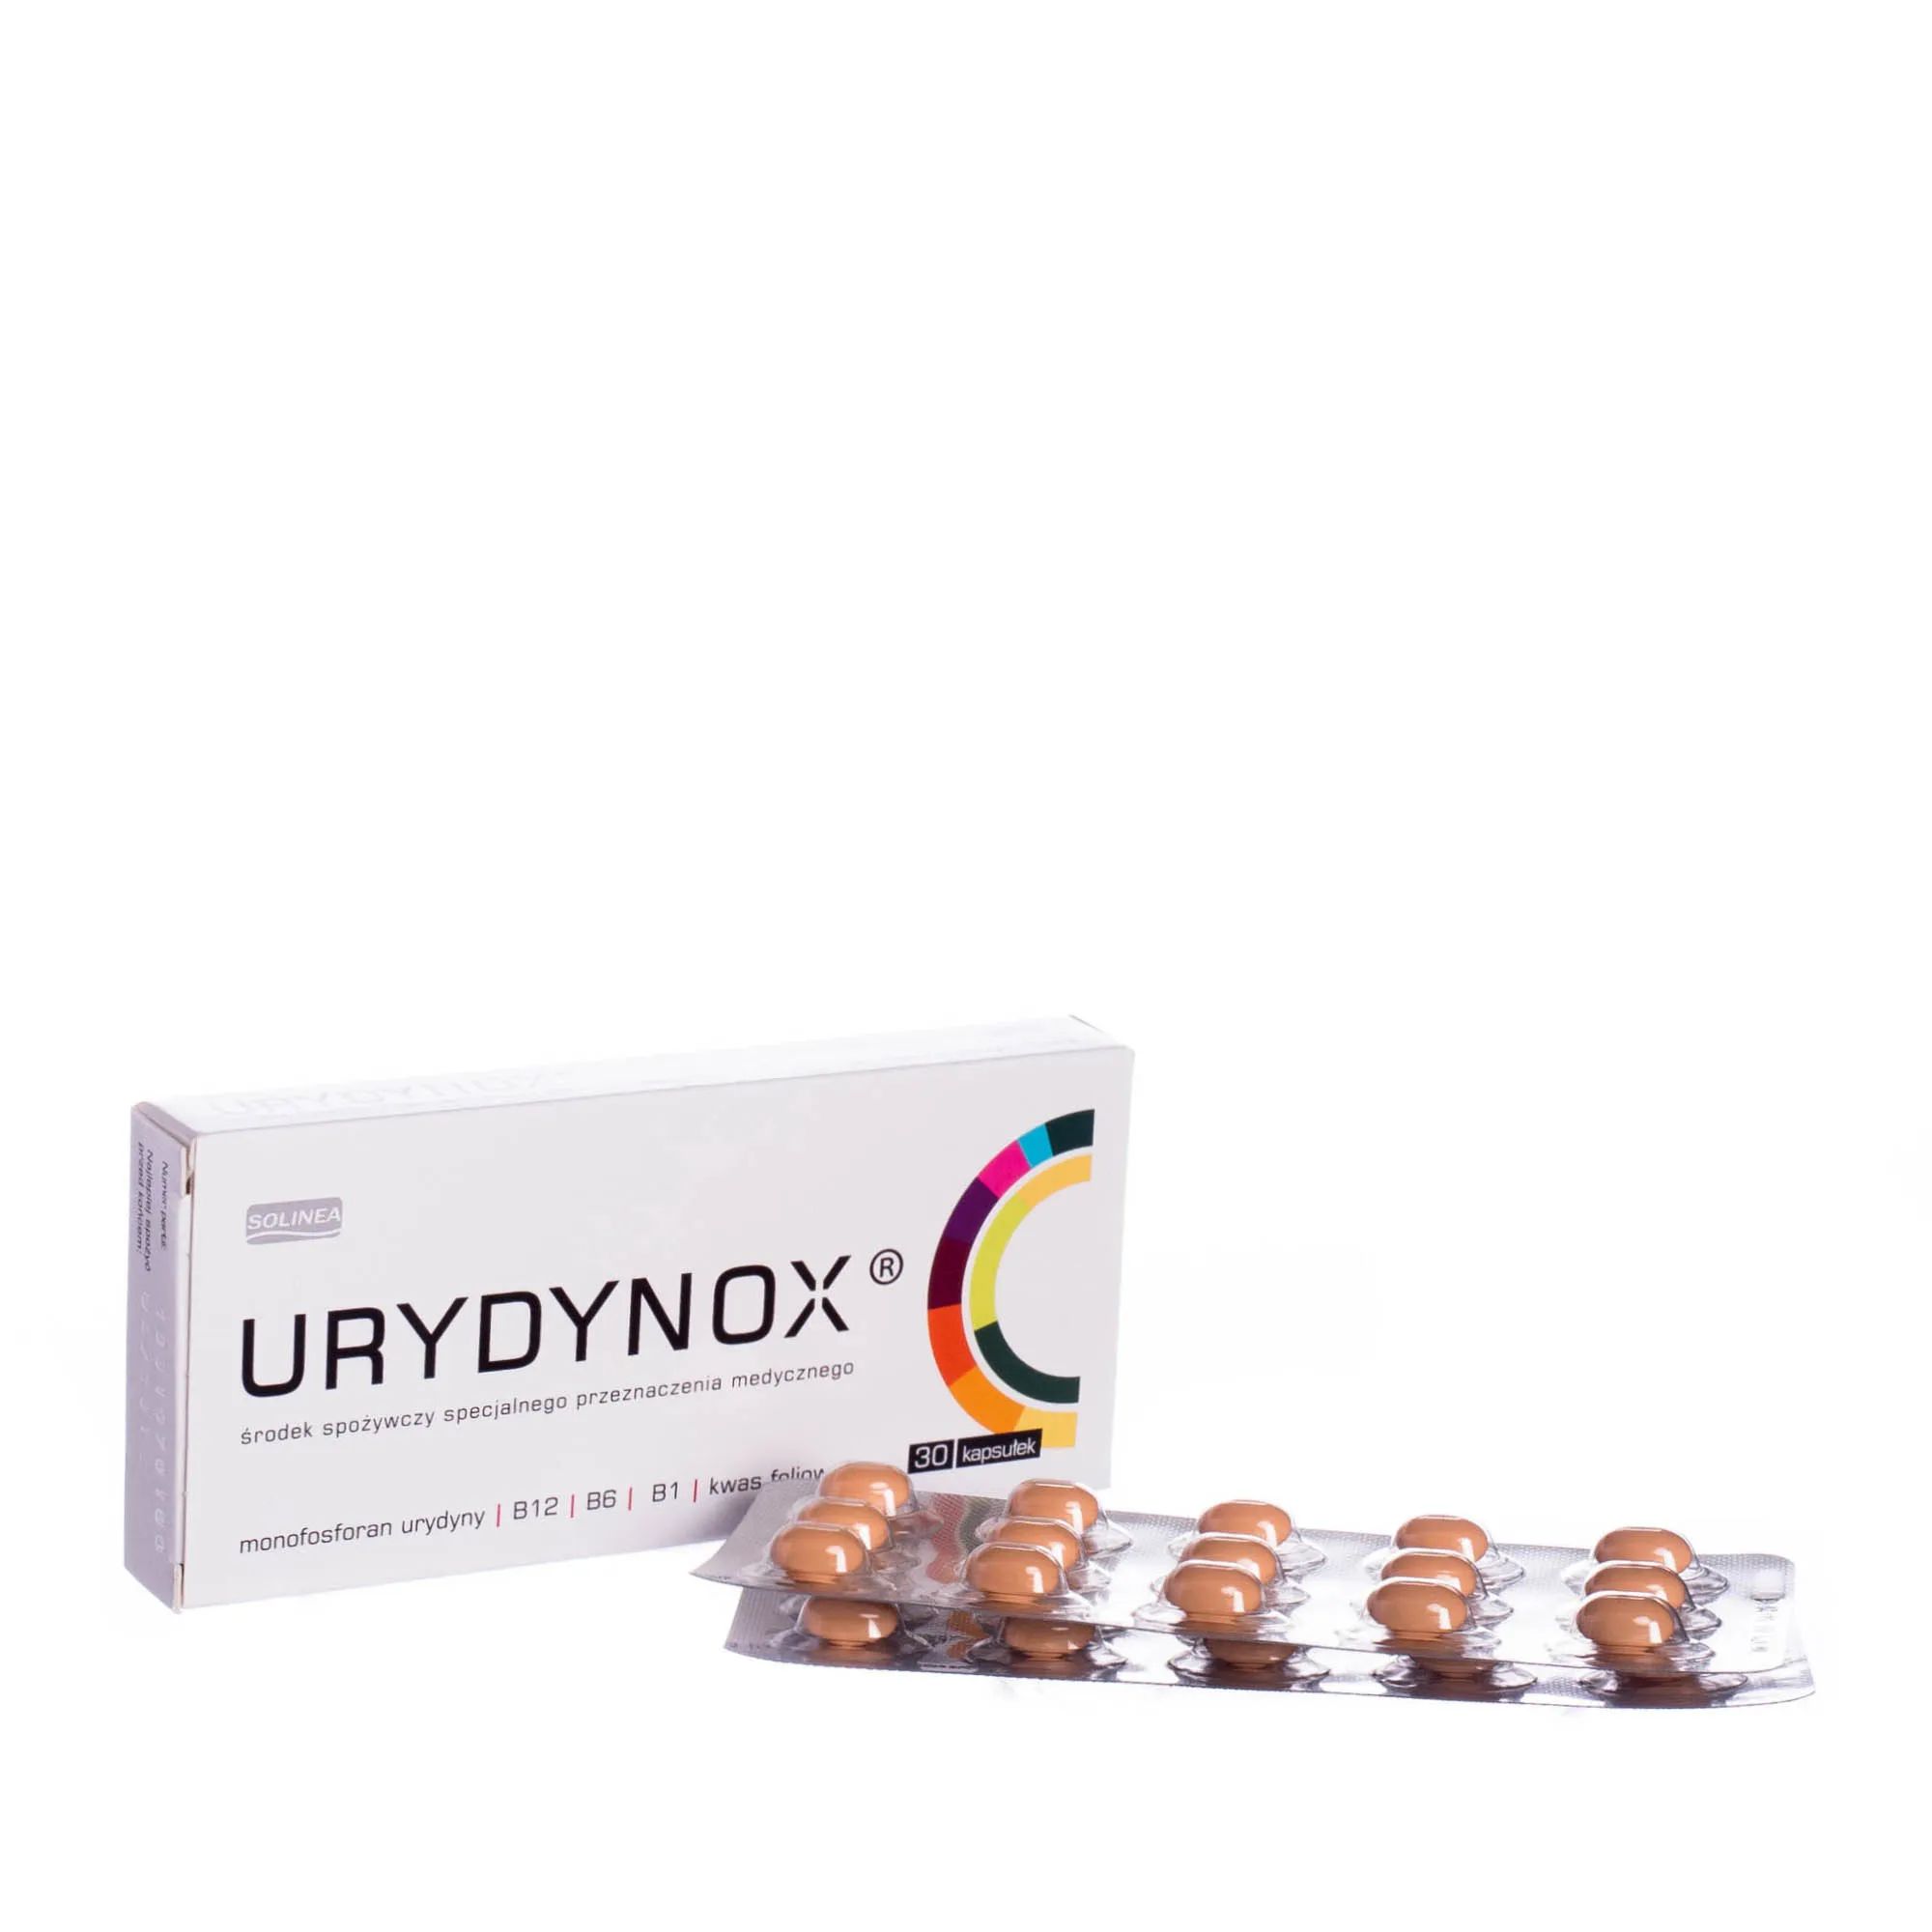 URYDYNOX - środek spożywczy specjalnego przeznaczenia medycznego, 30 kapsułek